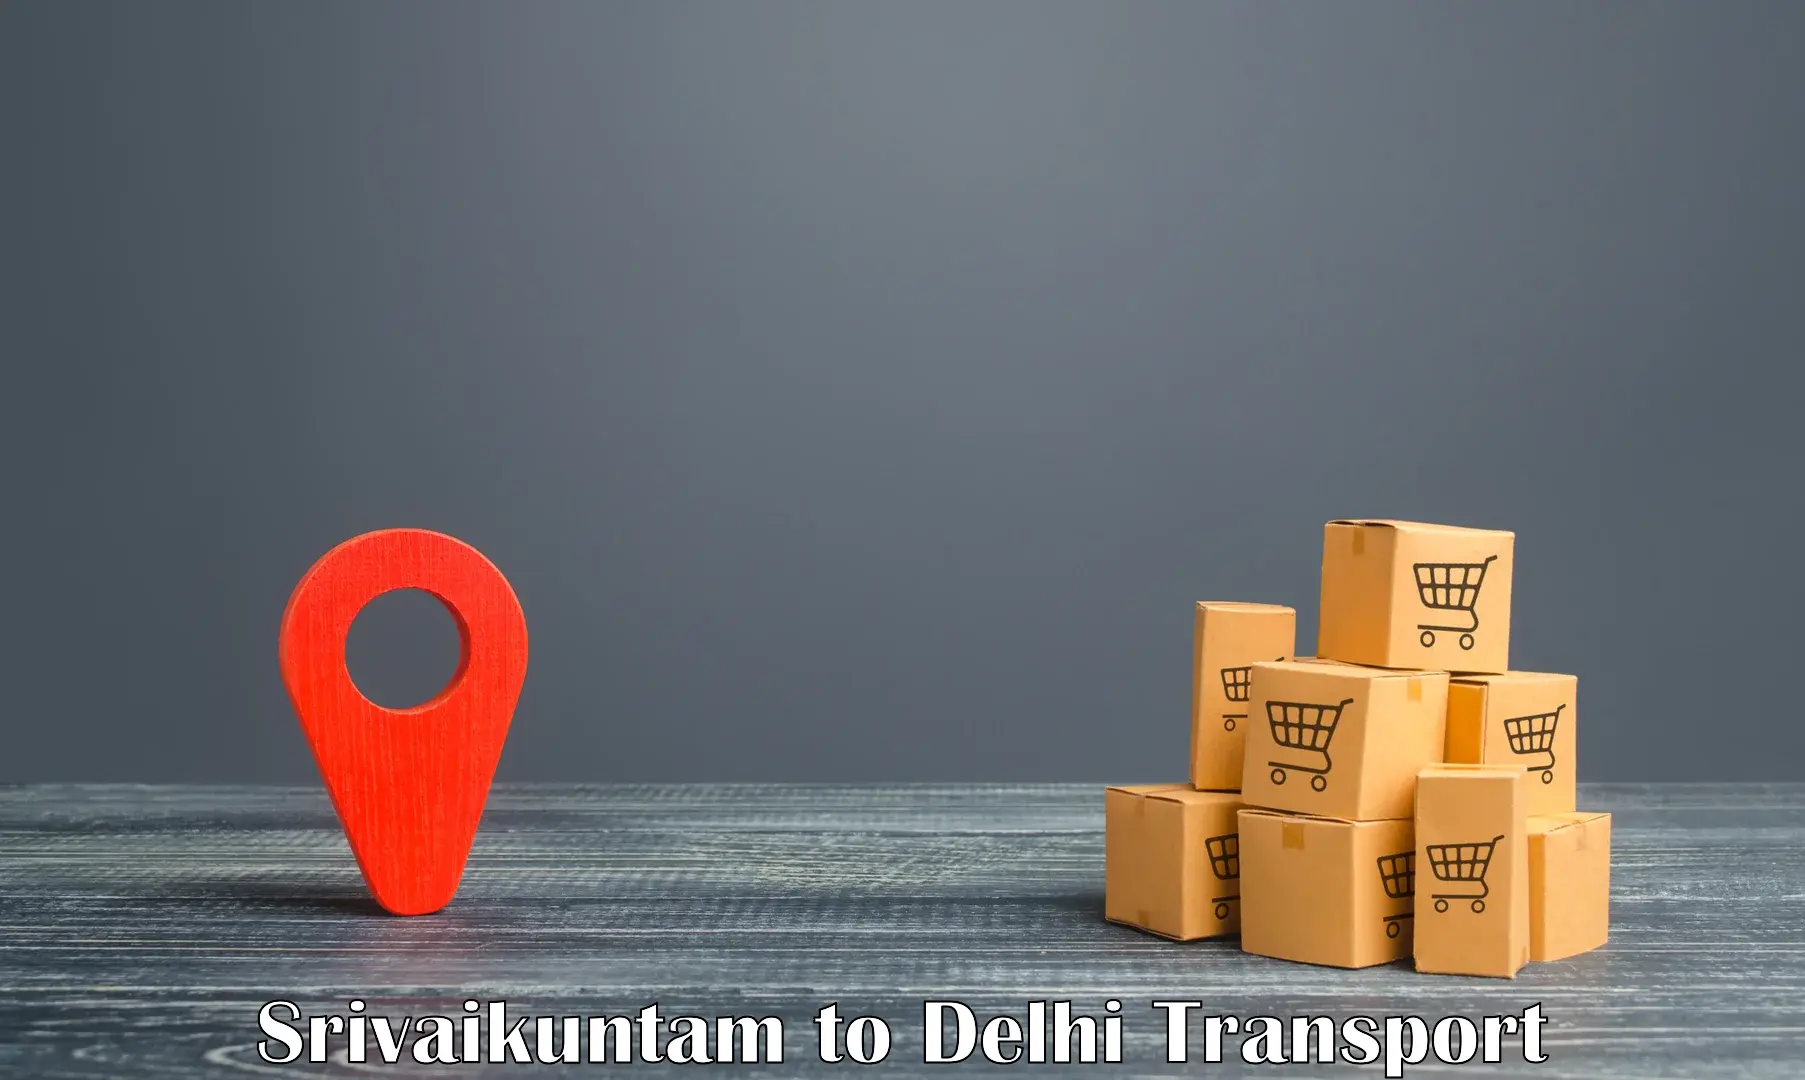 Delivery service Srivaikuntam to Delhi